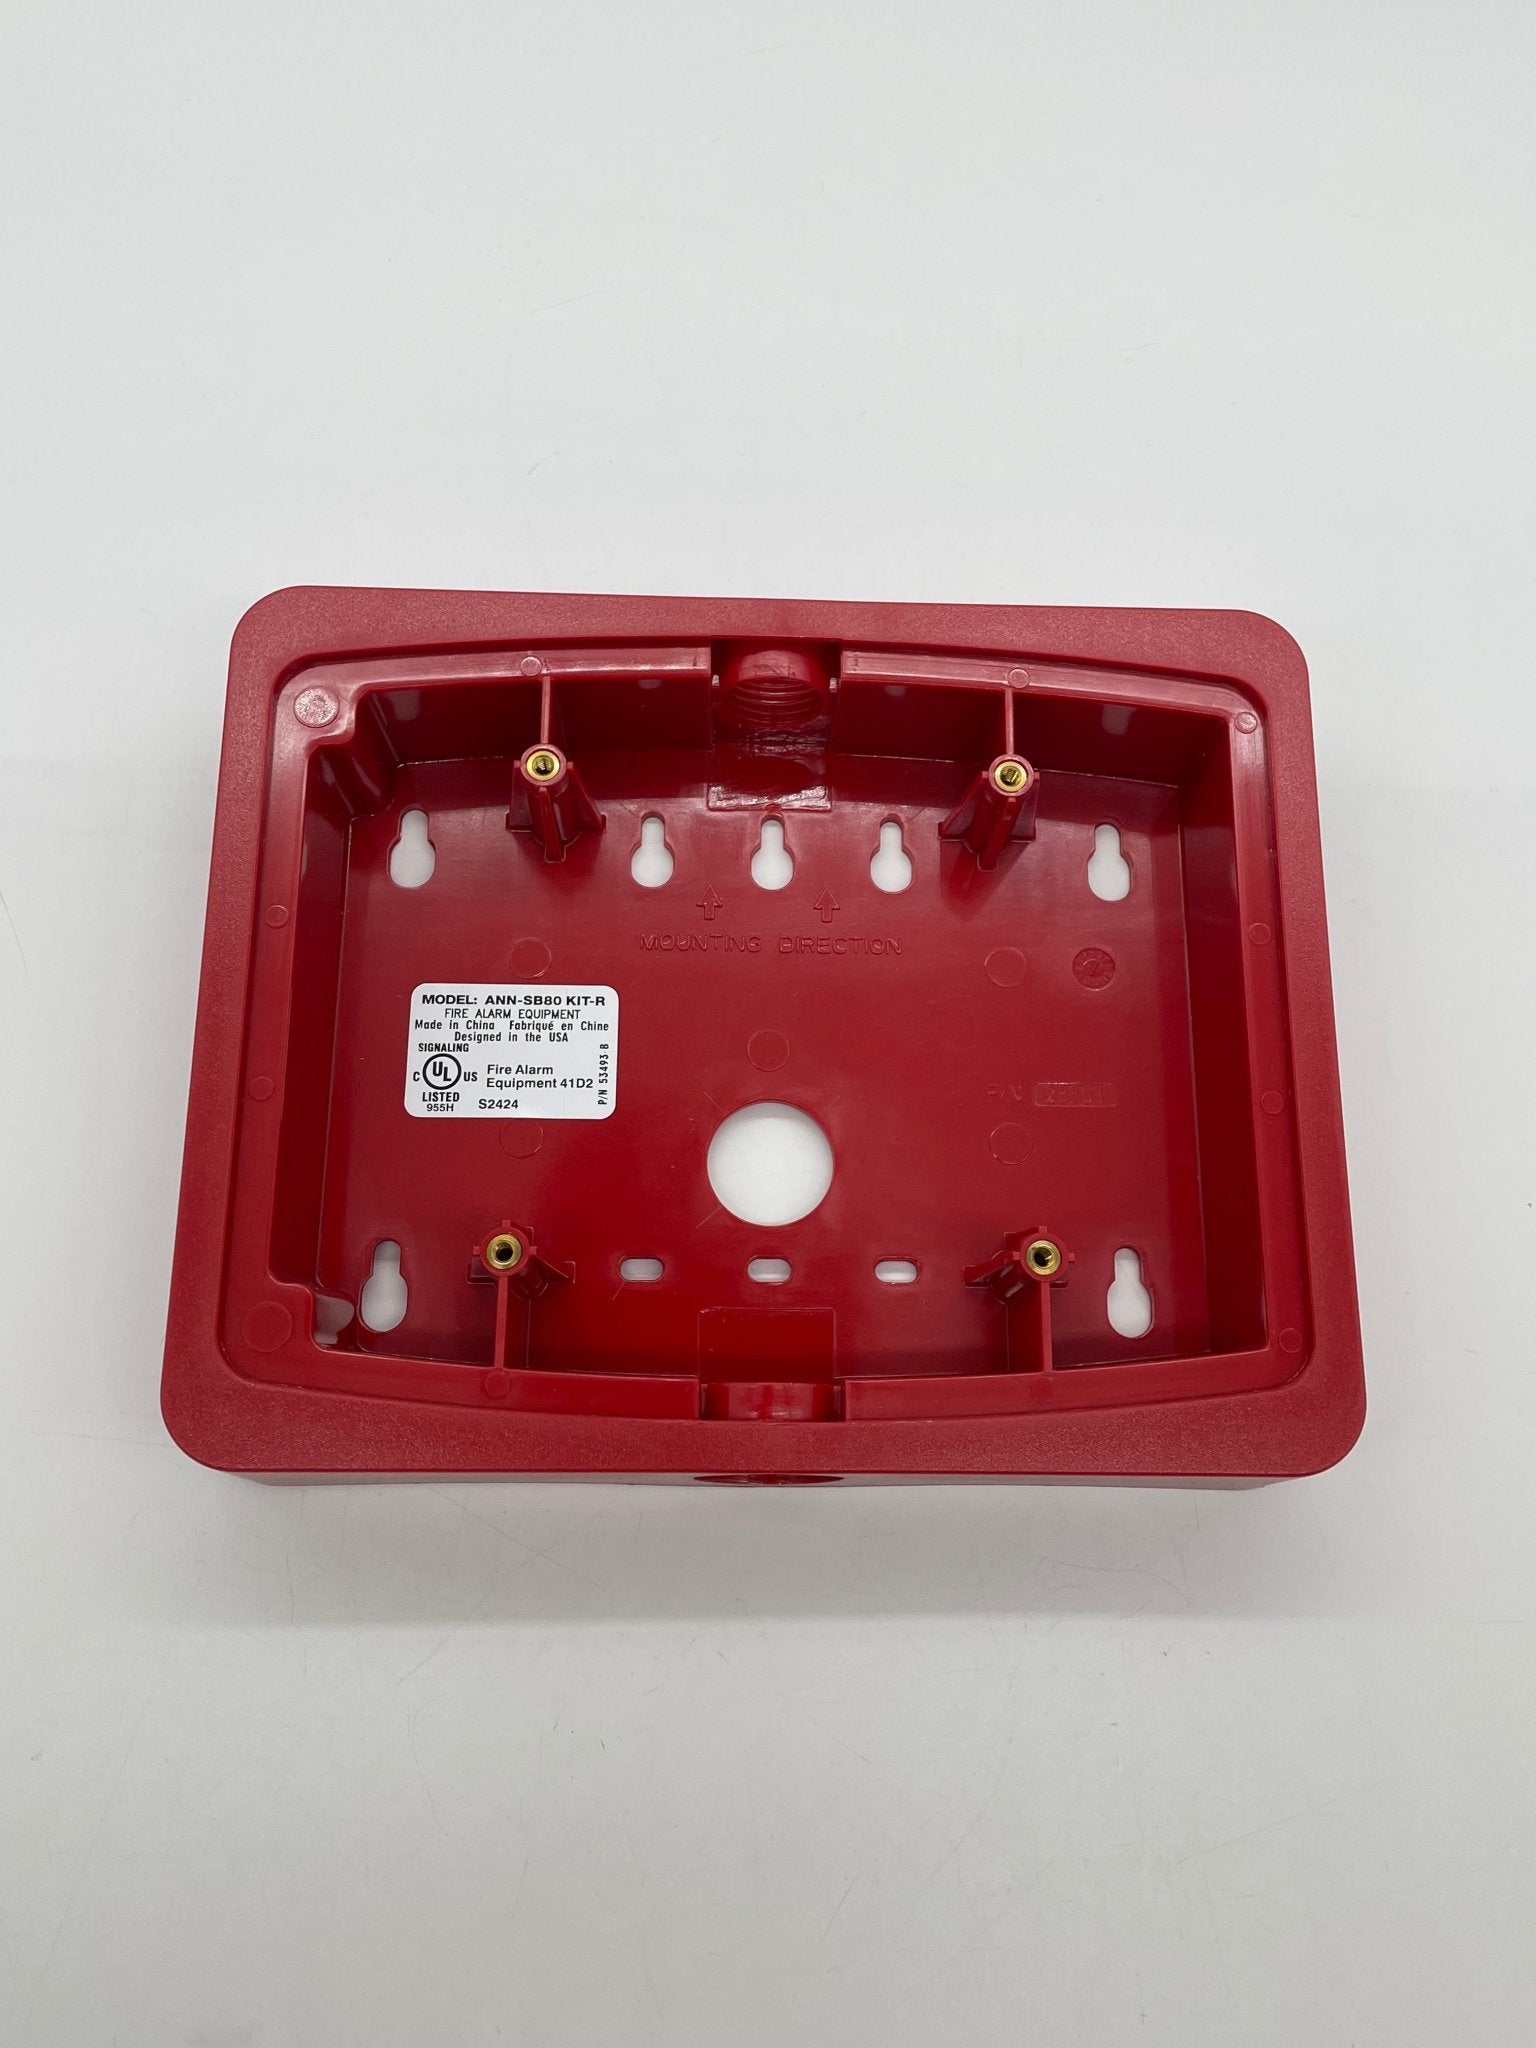 Firelite ANN-SB80KIT-R - The Fire Alarm Supplier